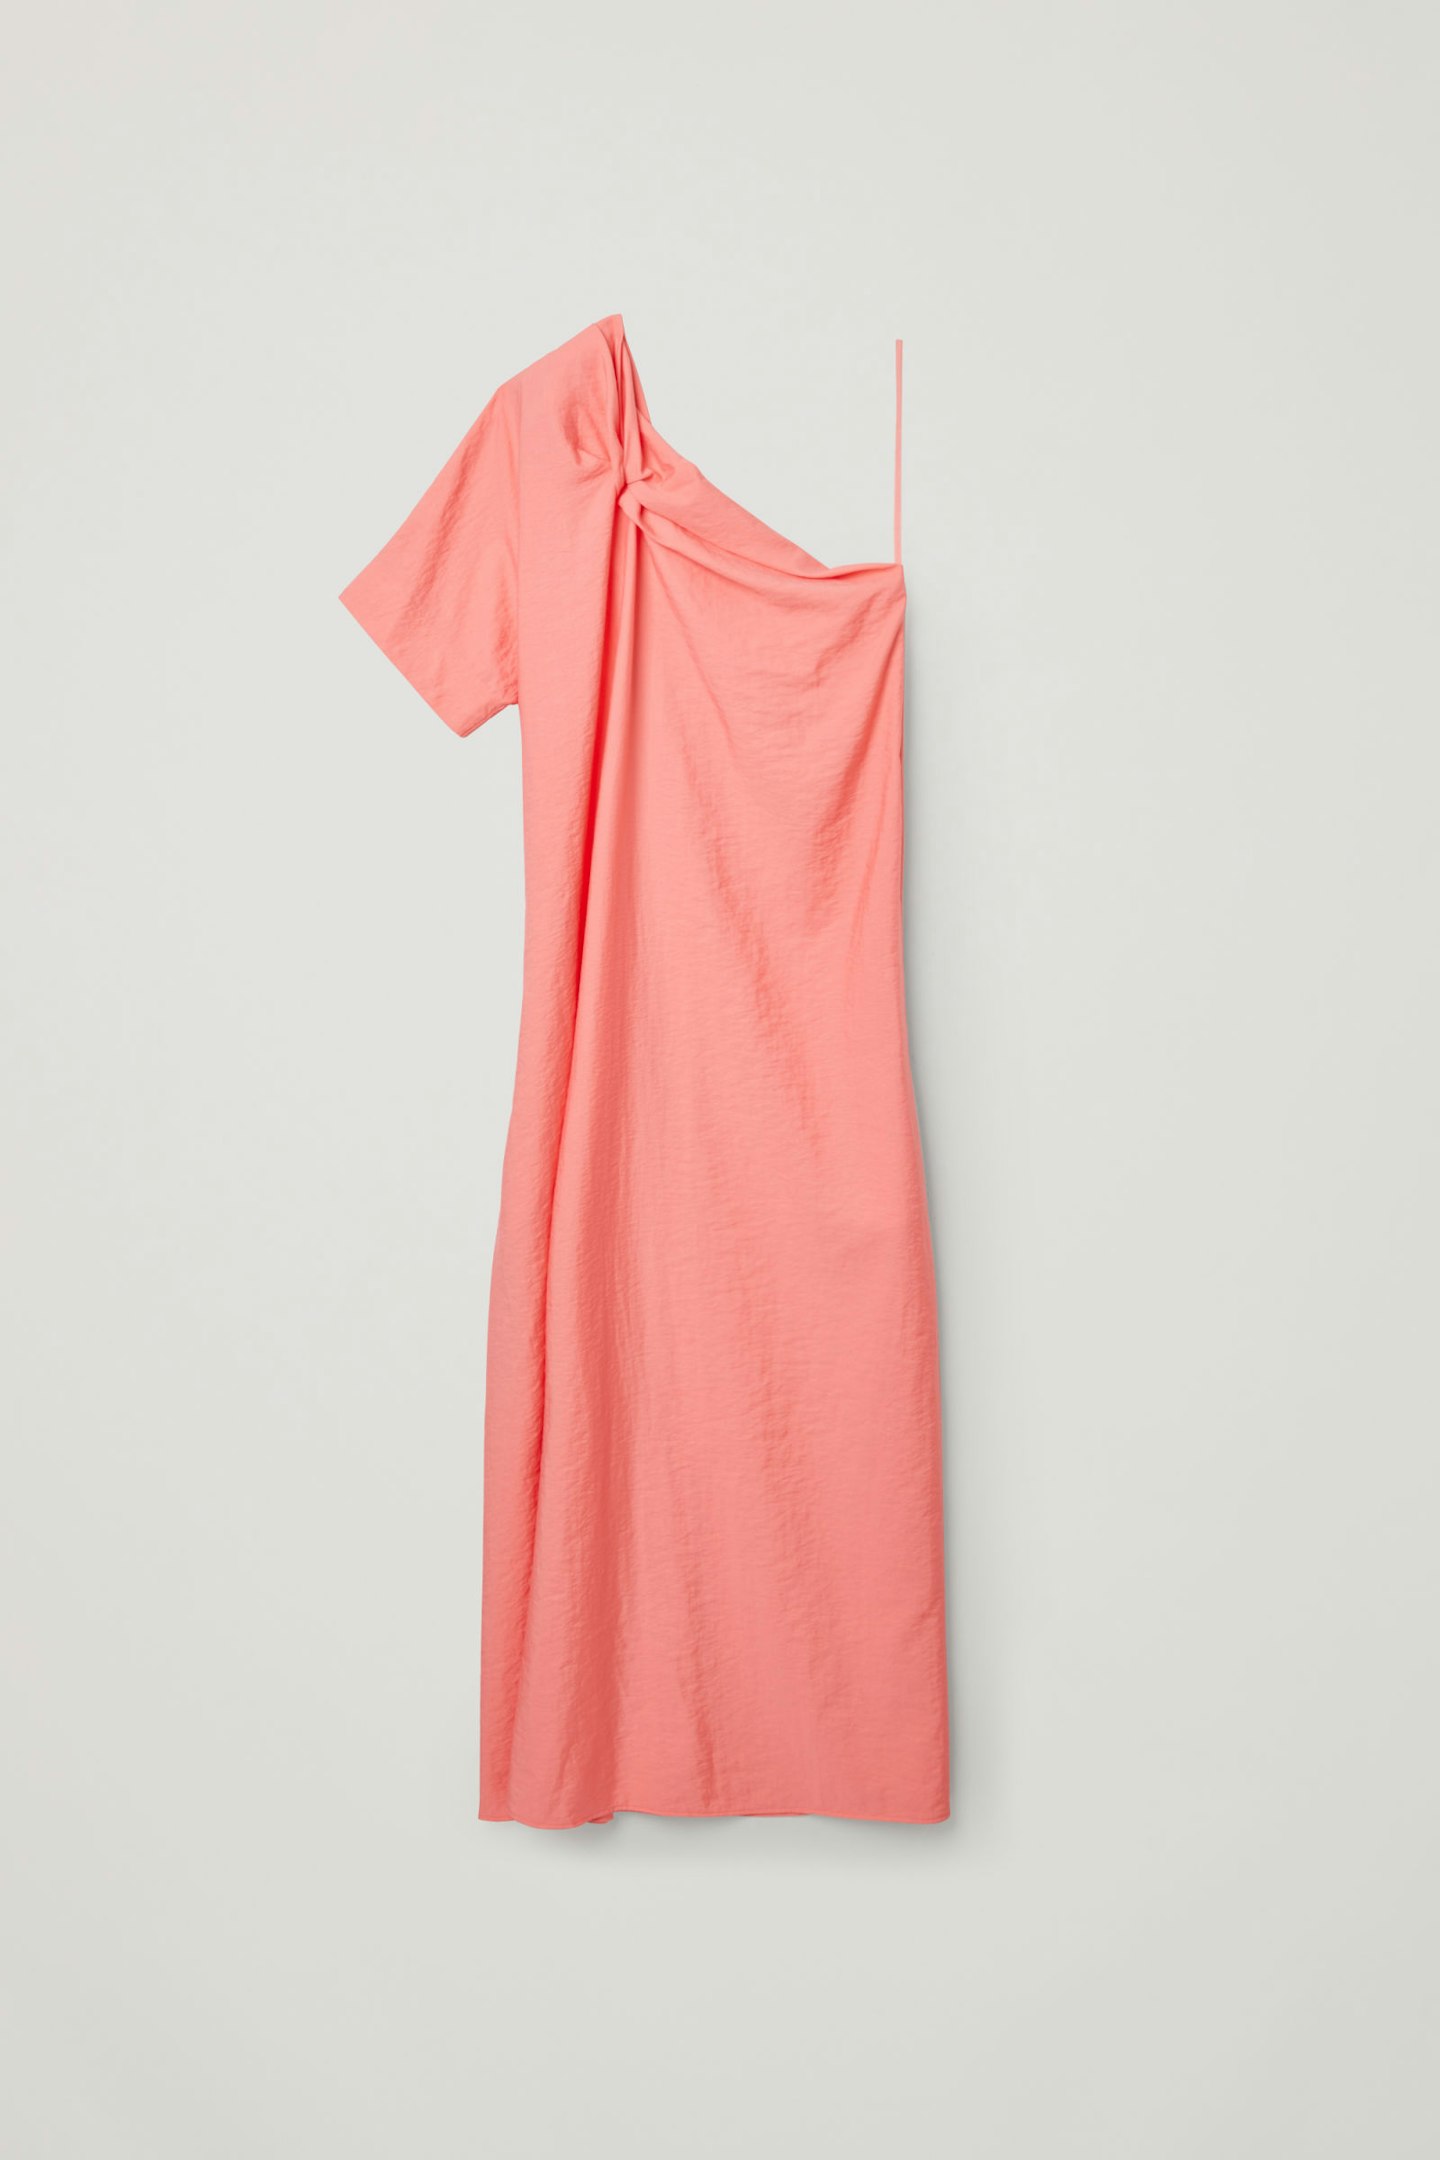 COS, Asymmetric Shoulder Detail Dress, £79